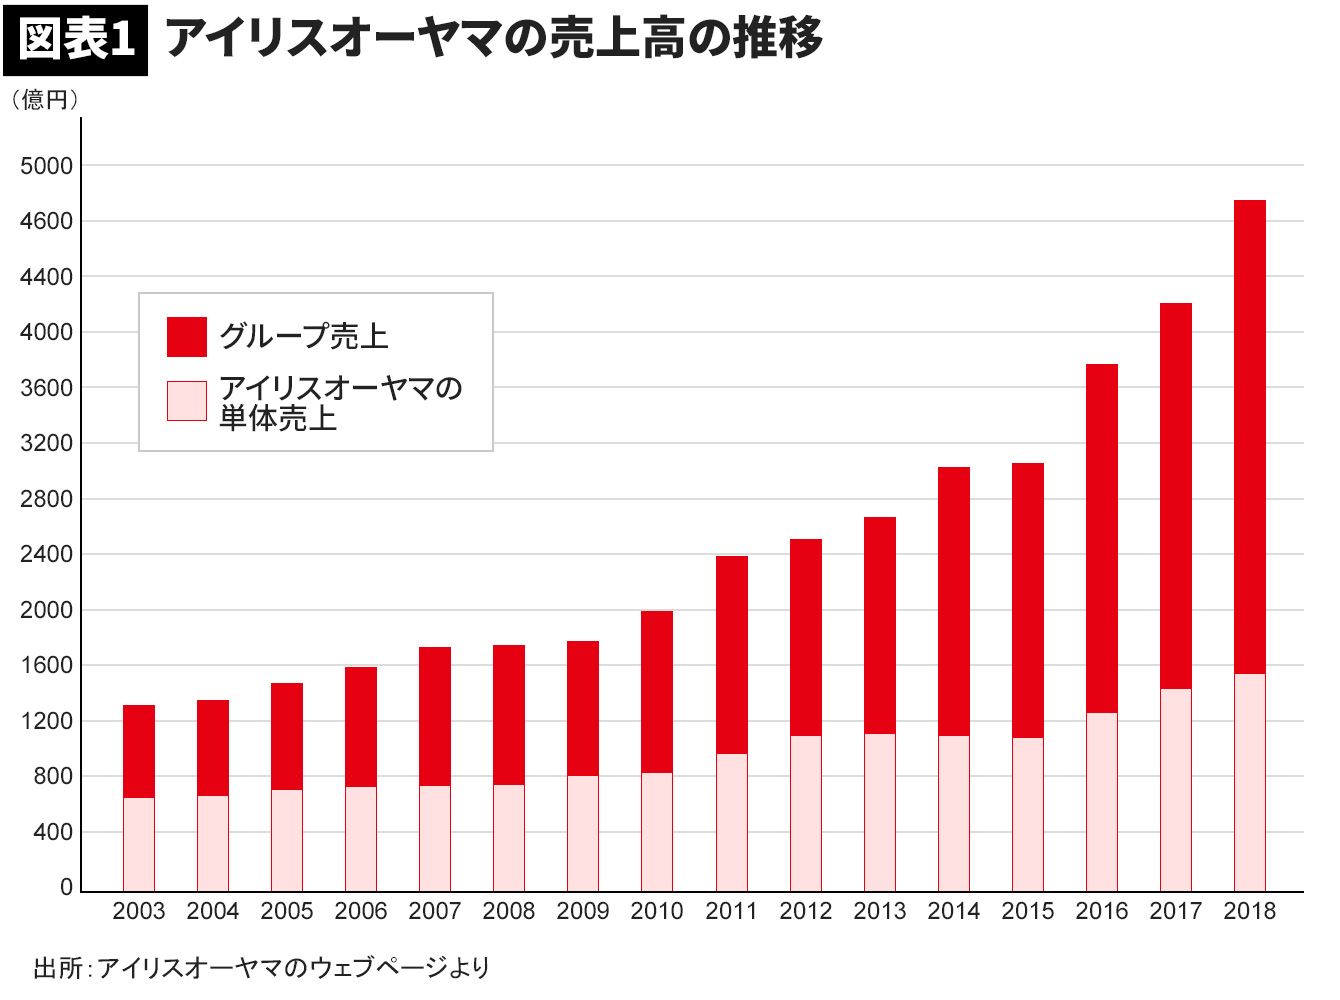 オーヤマ 株価 アイリス 「アイリスオーヤマ」のニュース一覧: 日本経済新聞